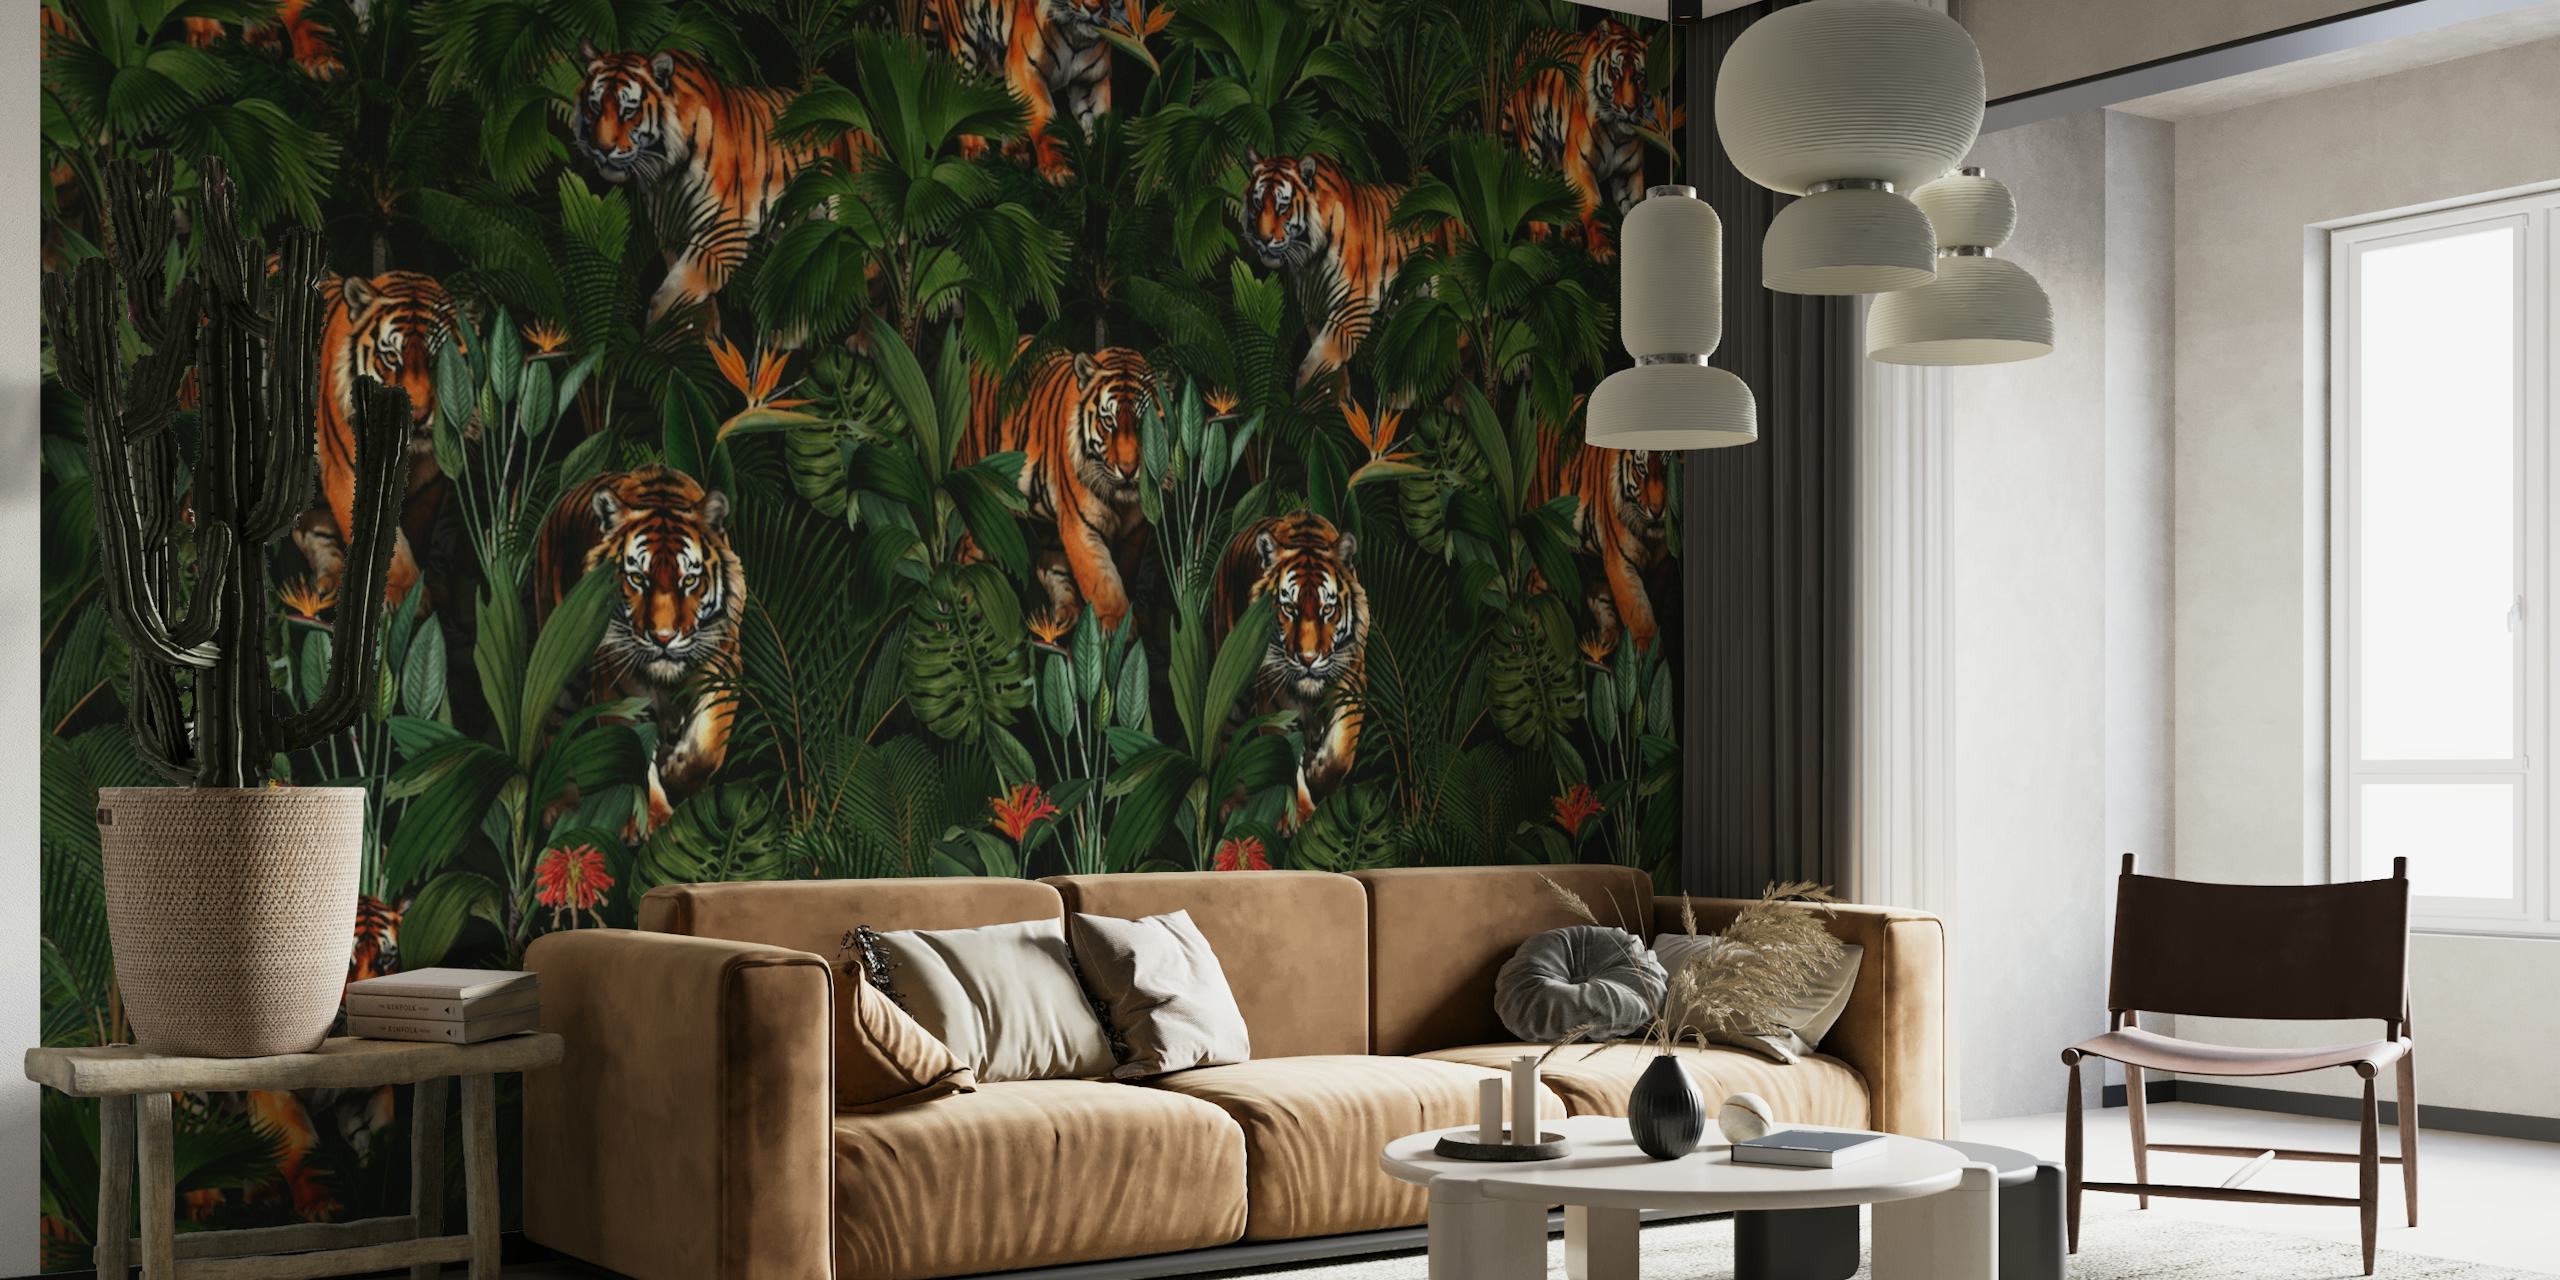 Bujna džungla noću zidna slika s tigrovima i tropskim biljkama